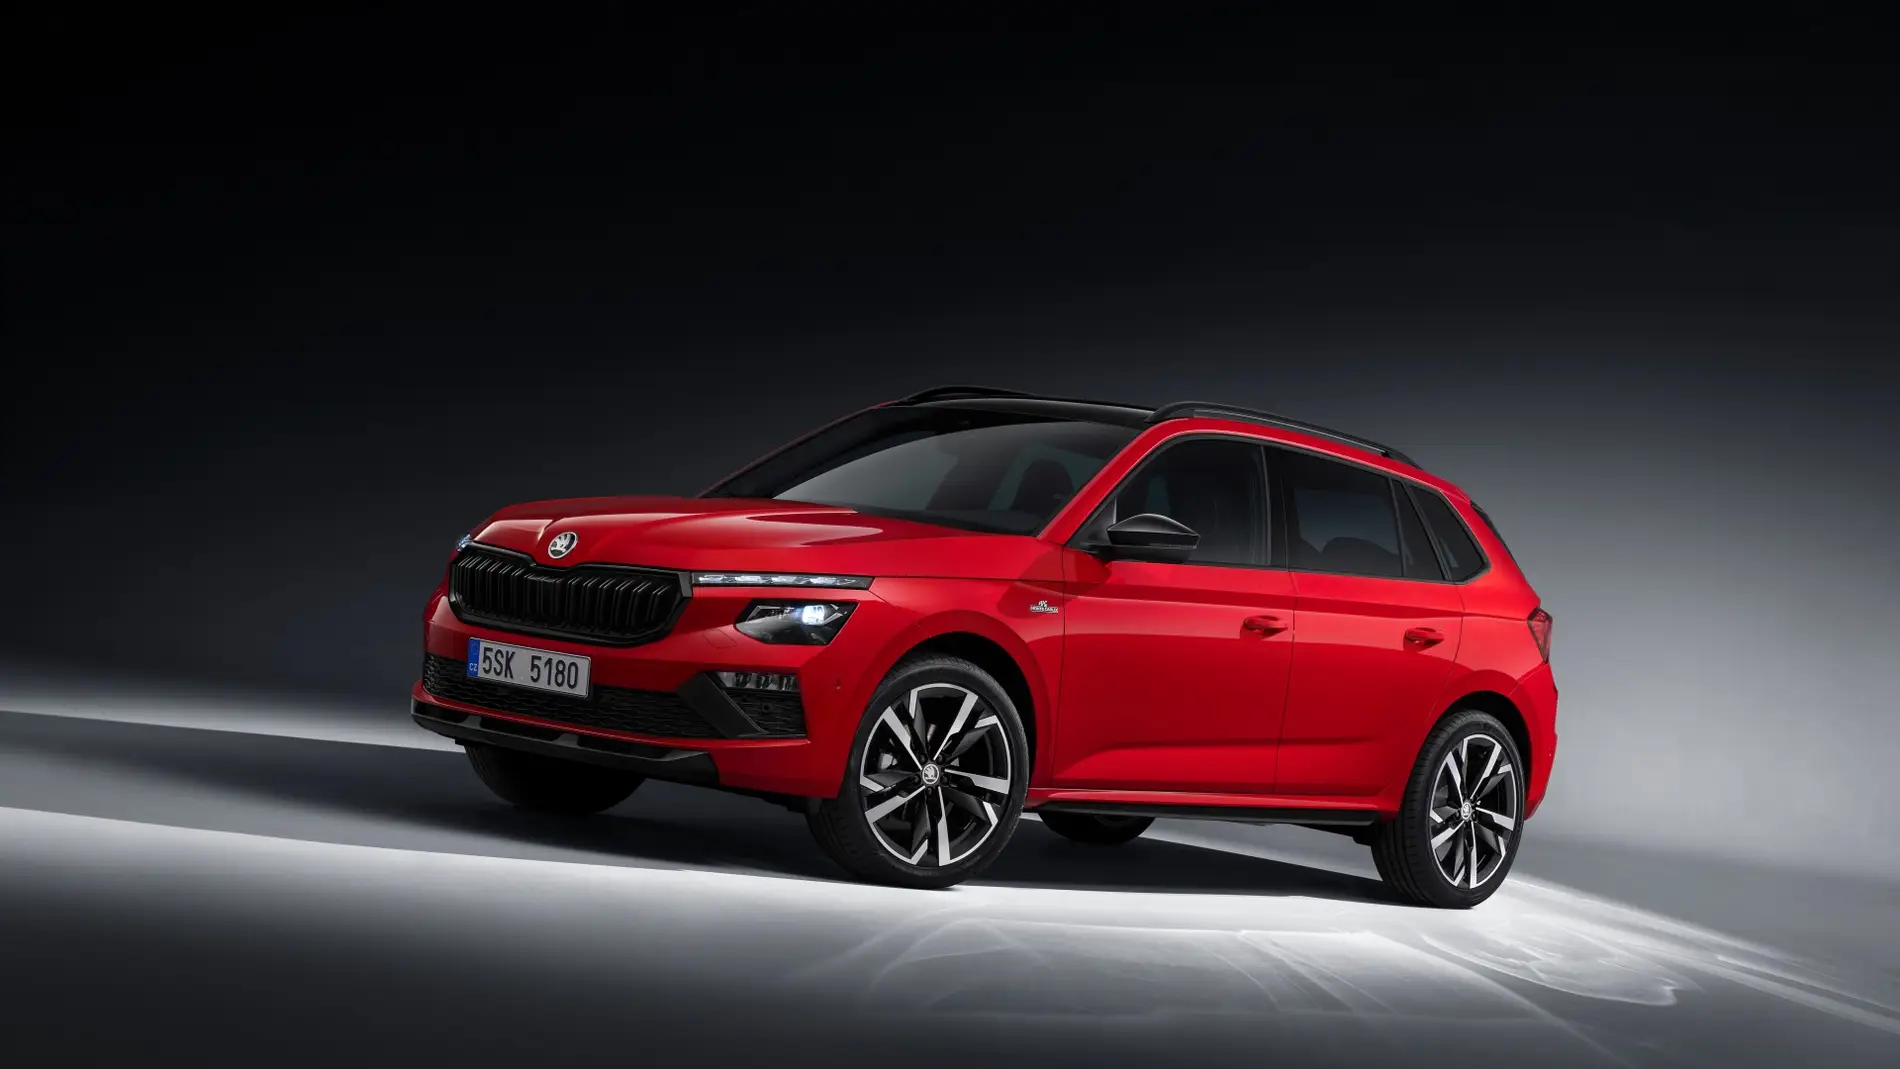 Skoda actualiza el SUV más pequeño y accesible de su gama para plantar cara a Volkswagen